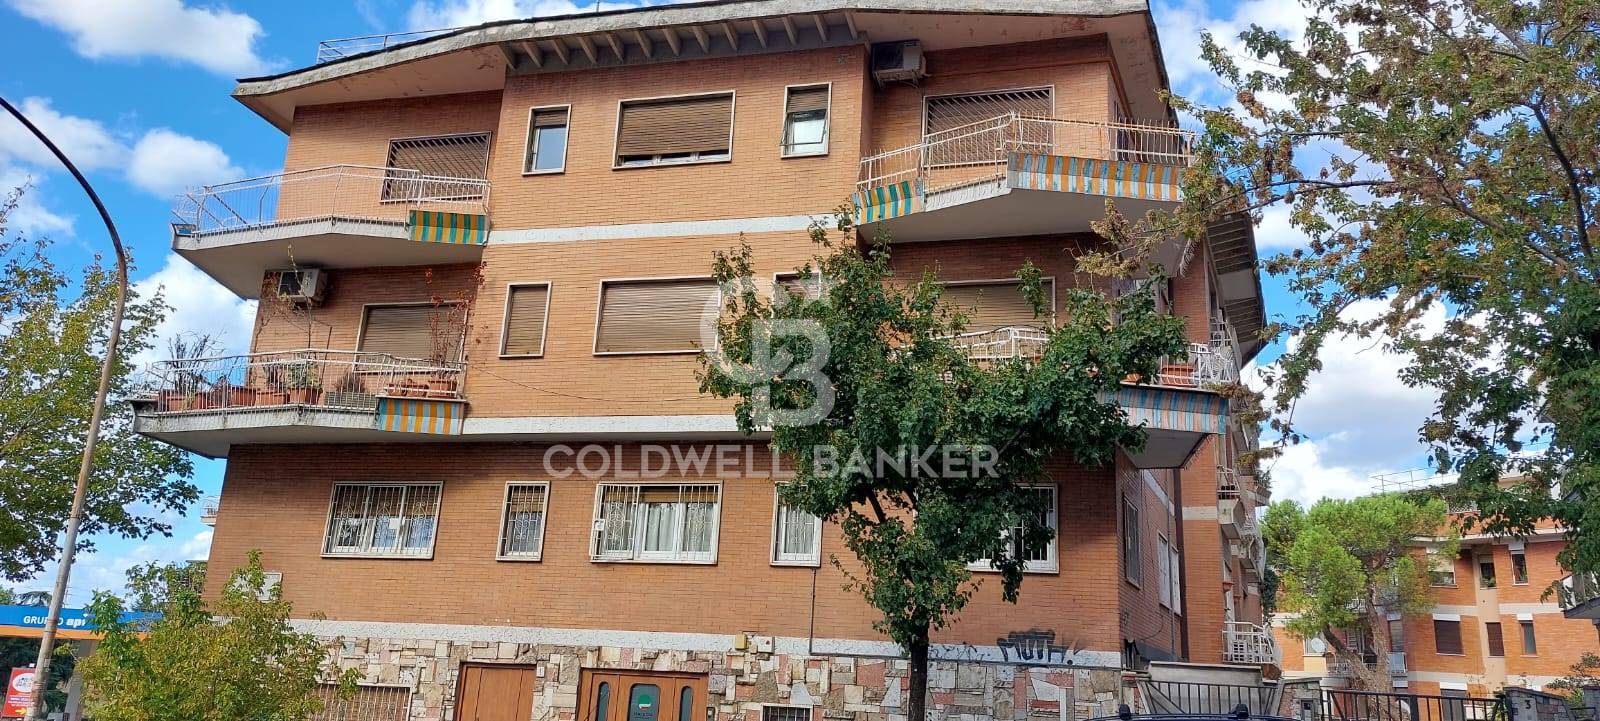 Appartamento in vendita a Roma, 5 locali, zona Zona: 3 . Trieste - Somalia - Salario, prezzo € 595.000 | CambioCasa.it